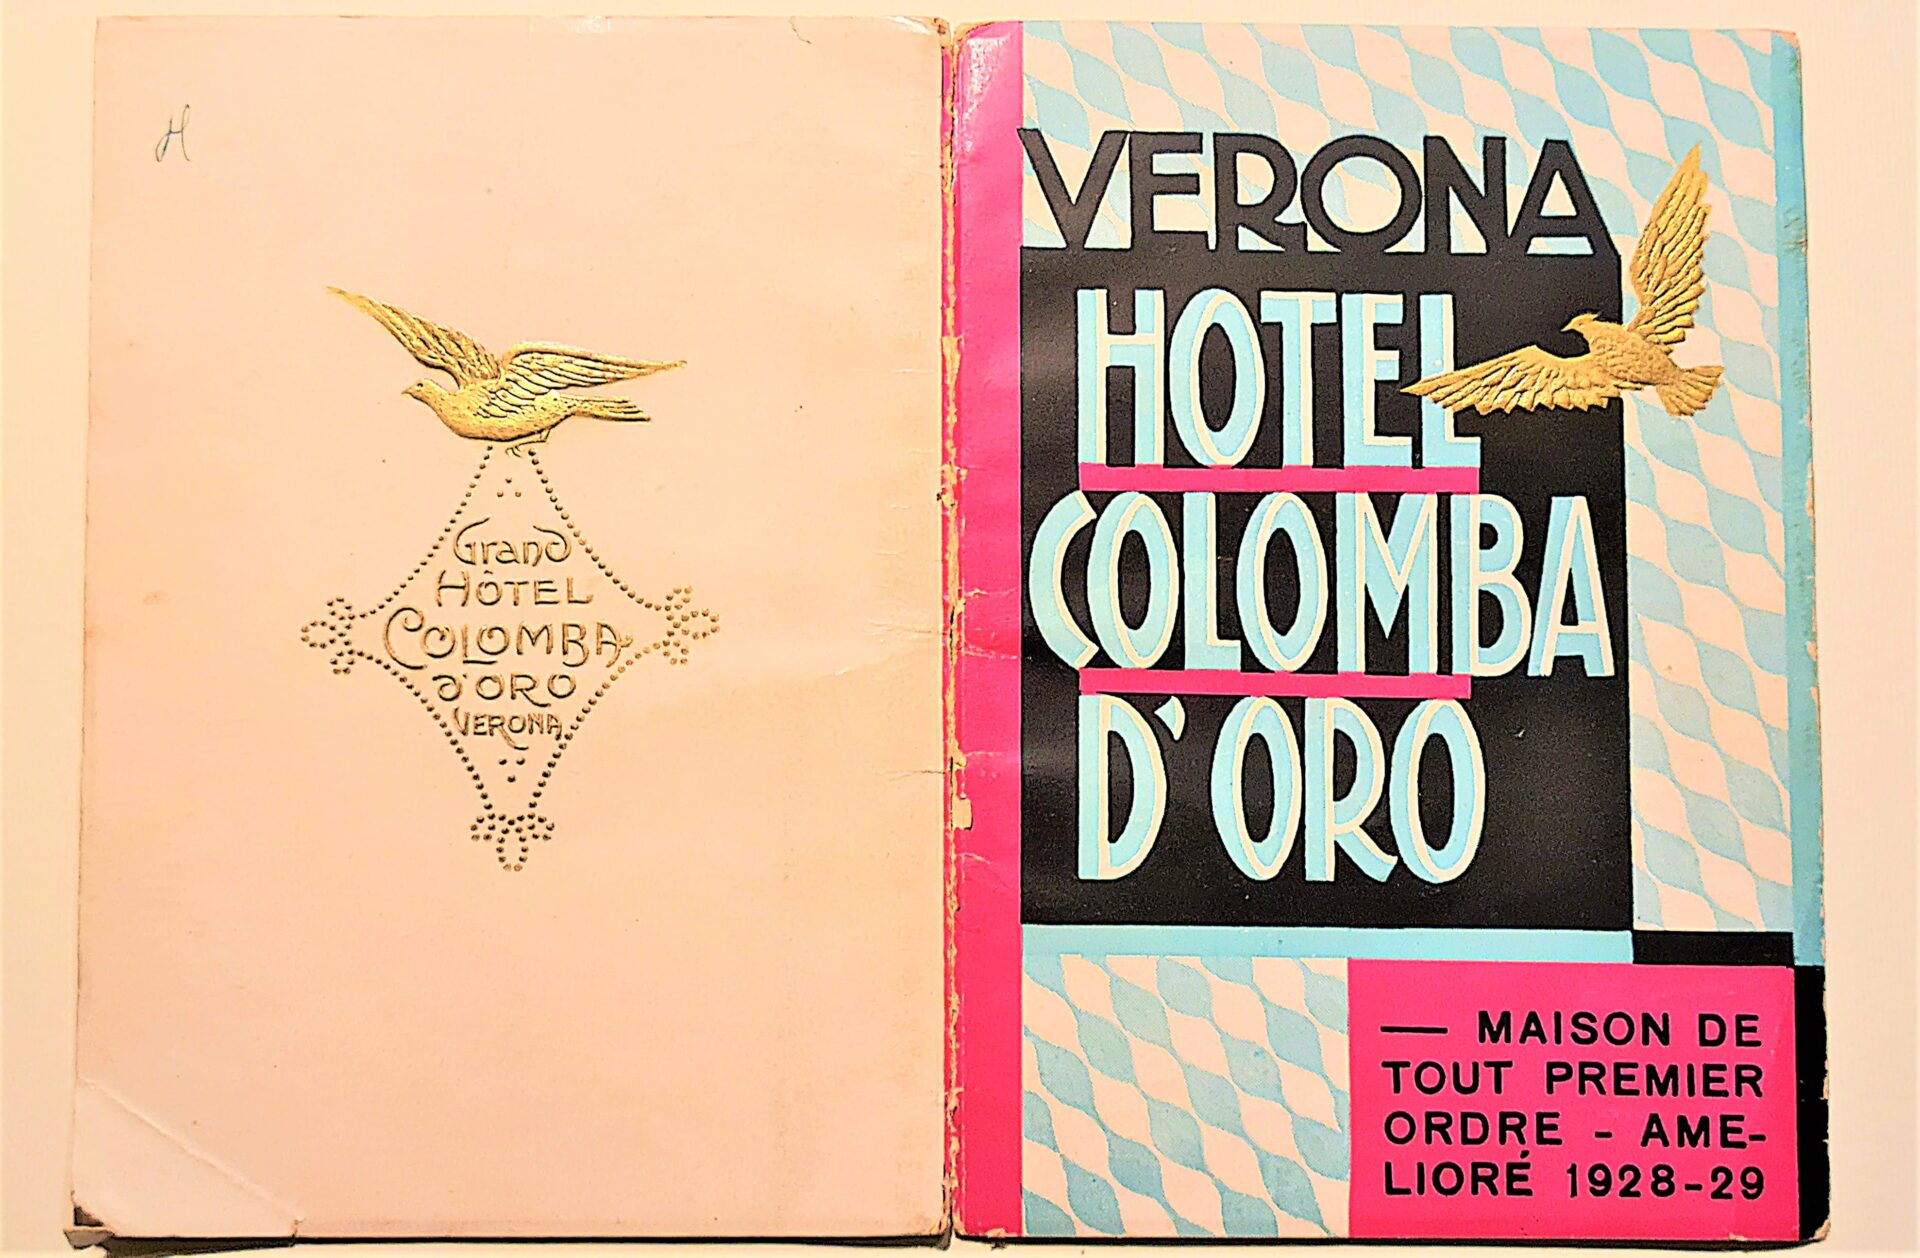 Stampa di un libro con Hotel Colomba d'Oro